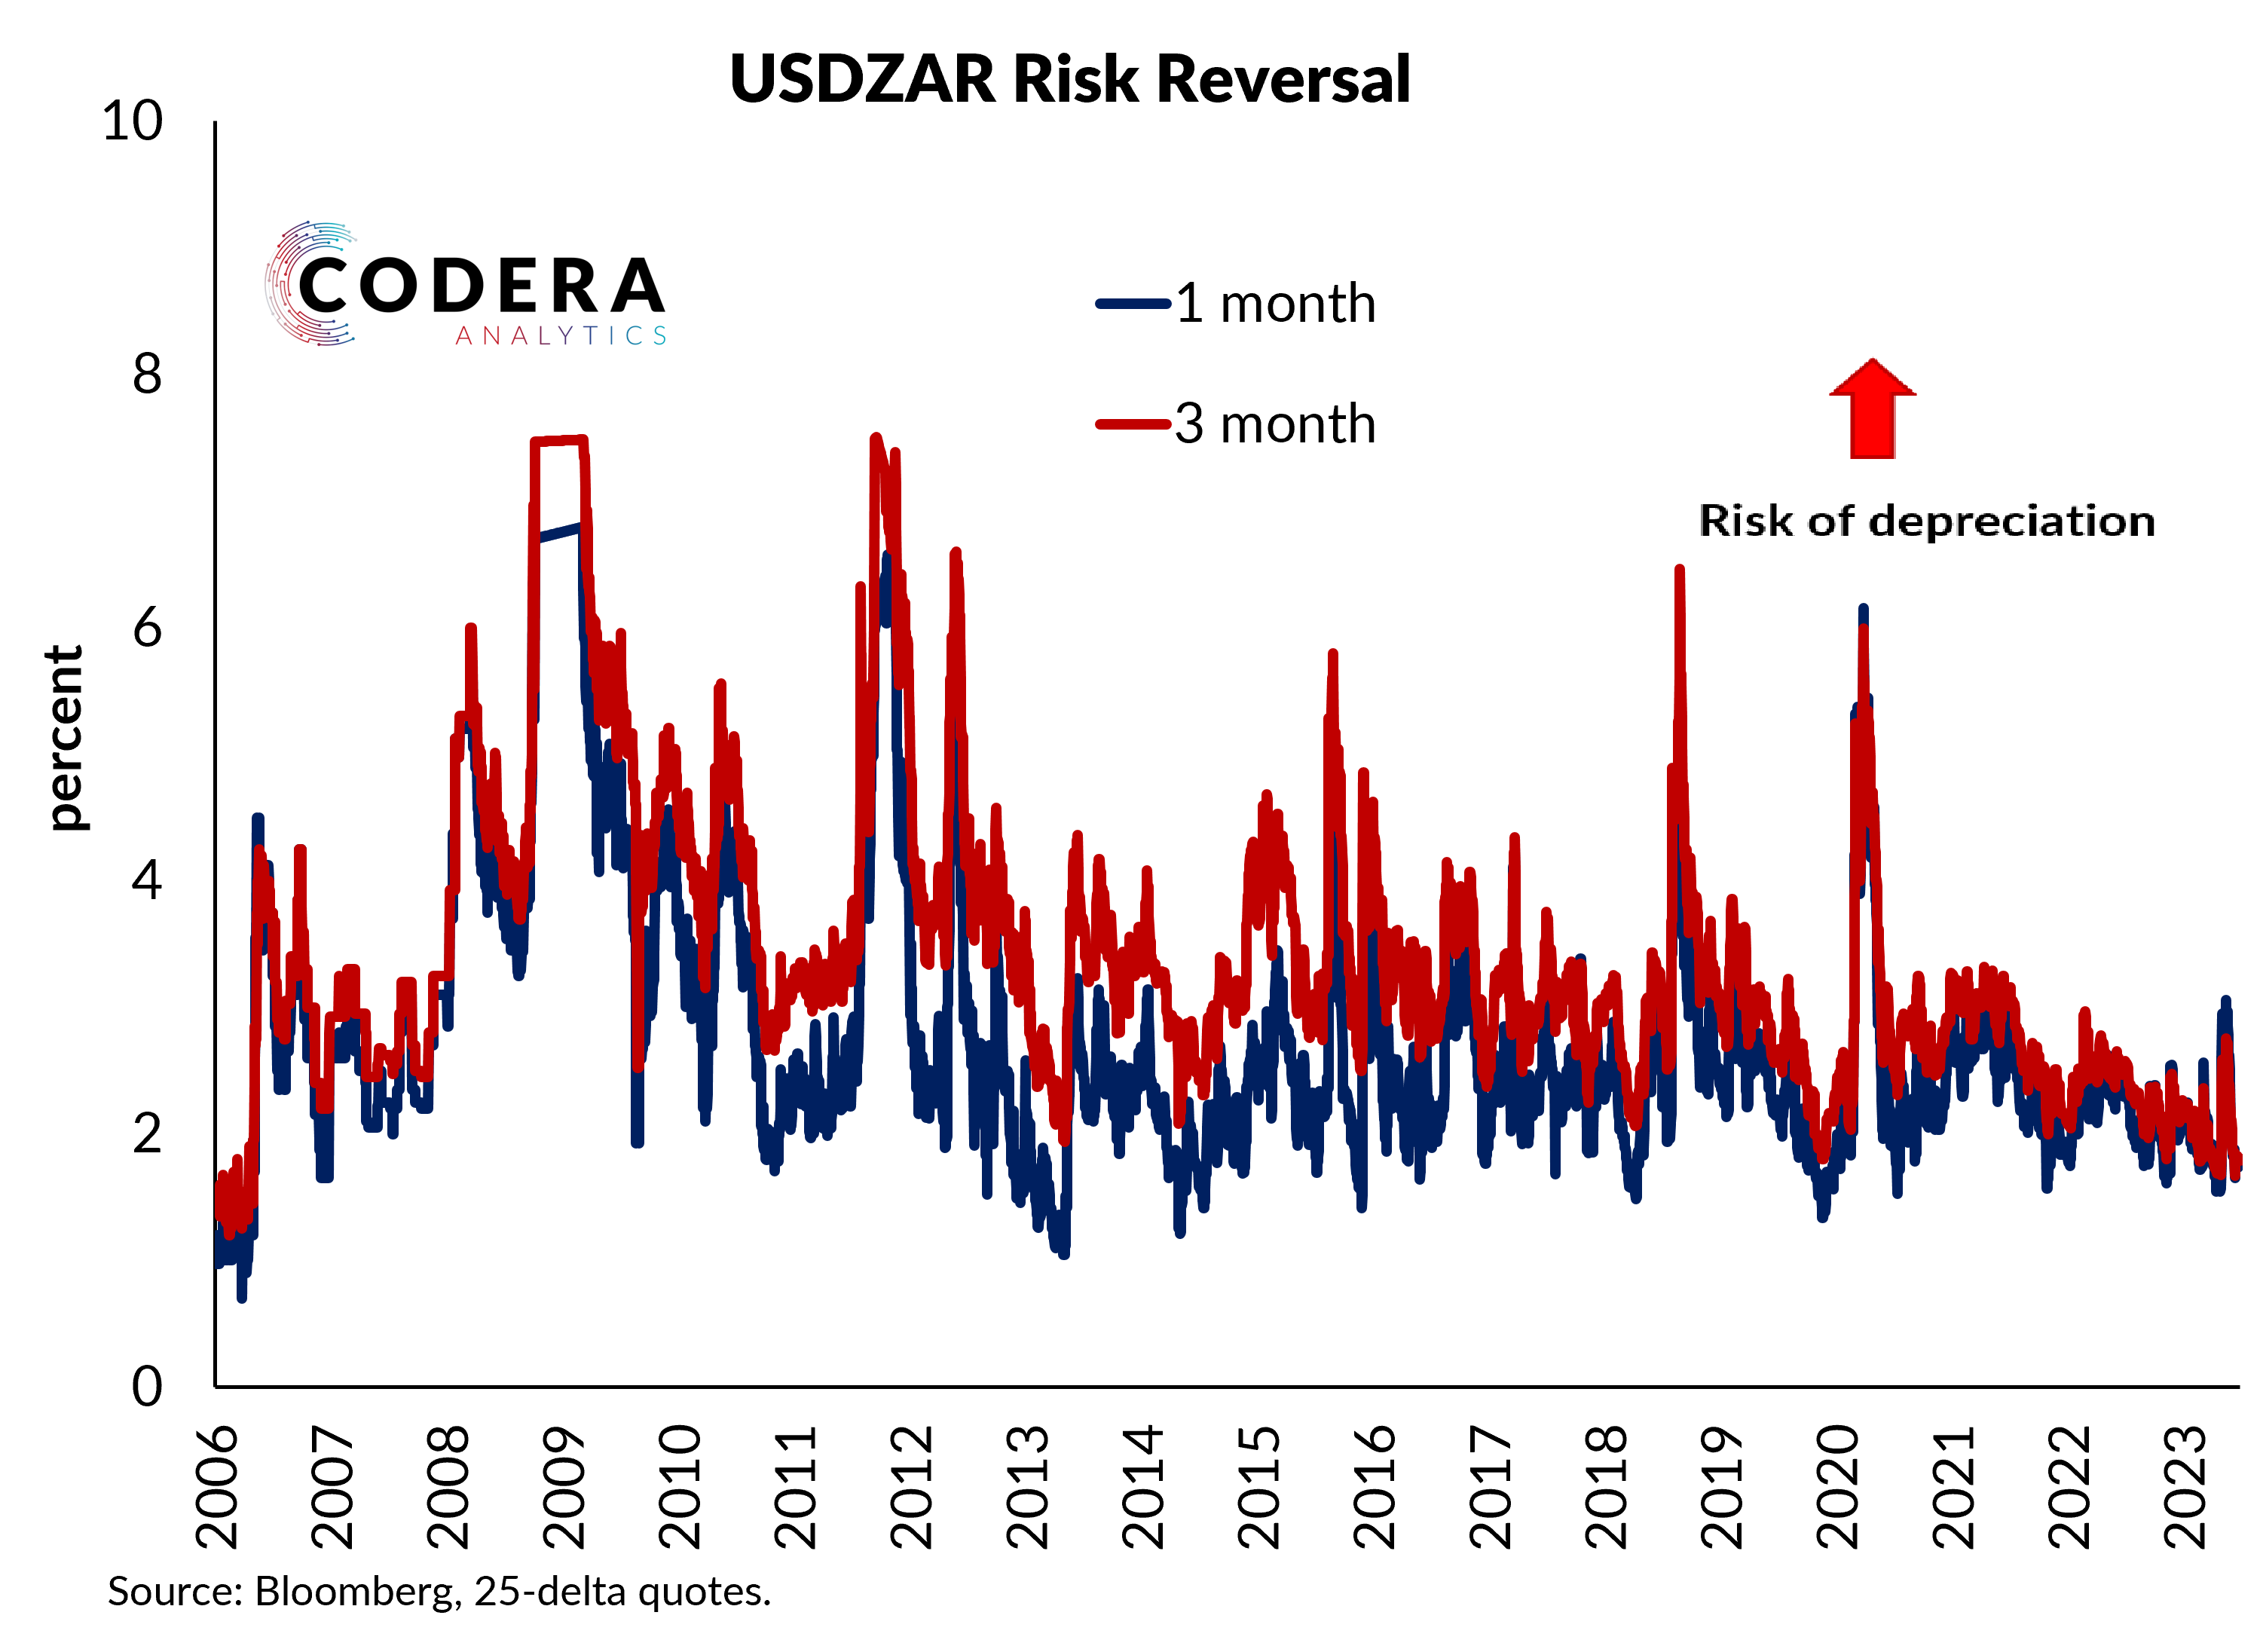 Risk reversal for USDZAR